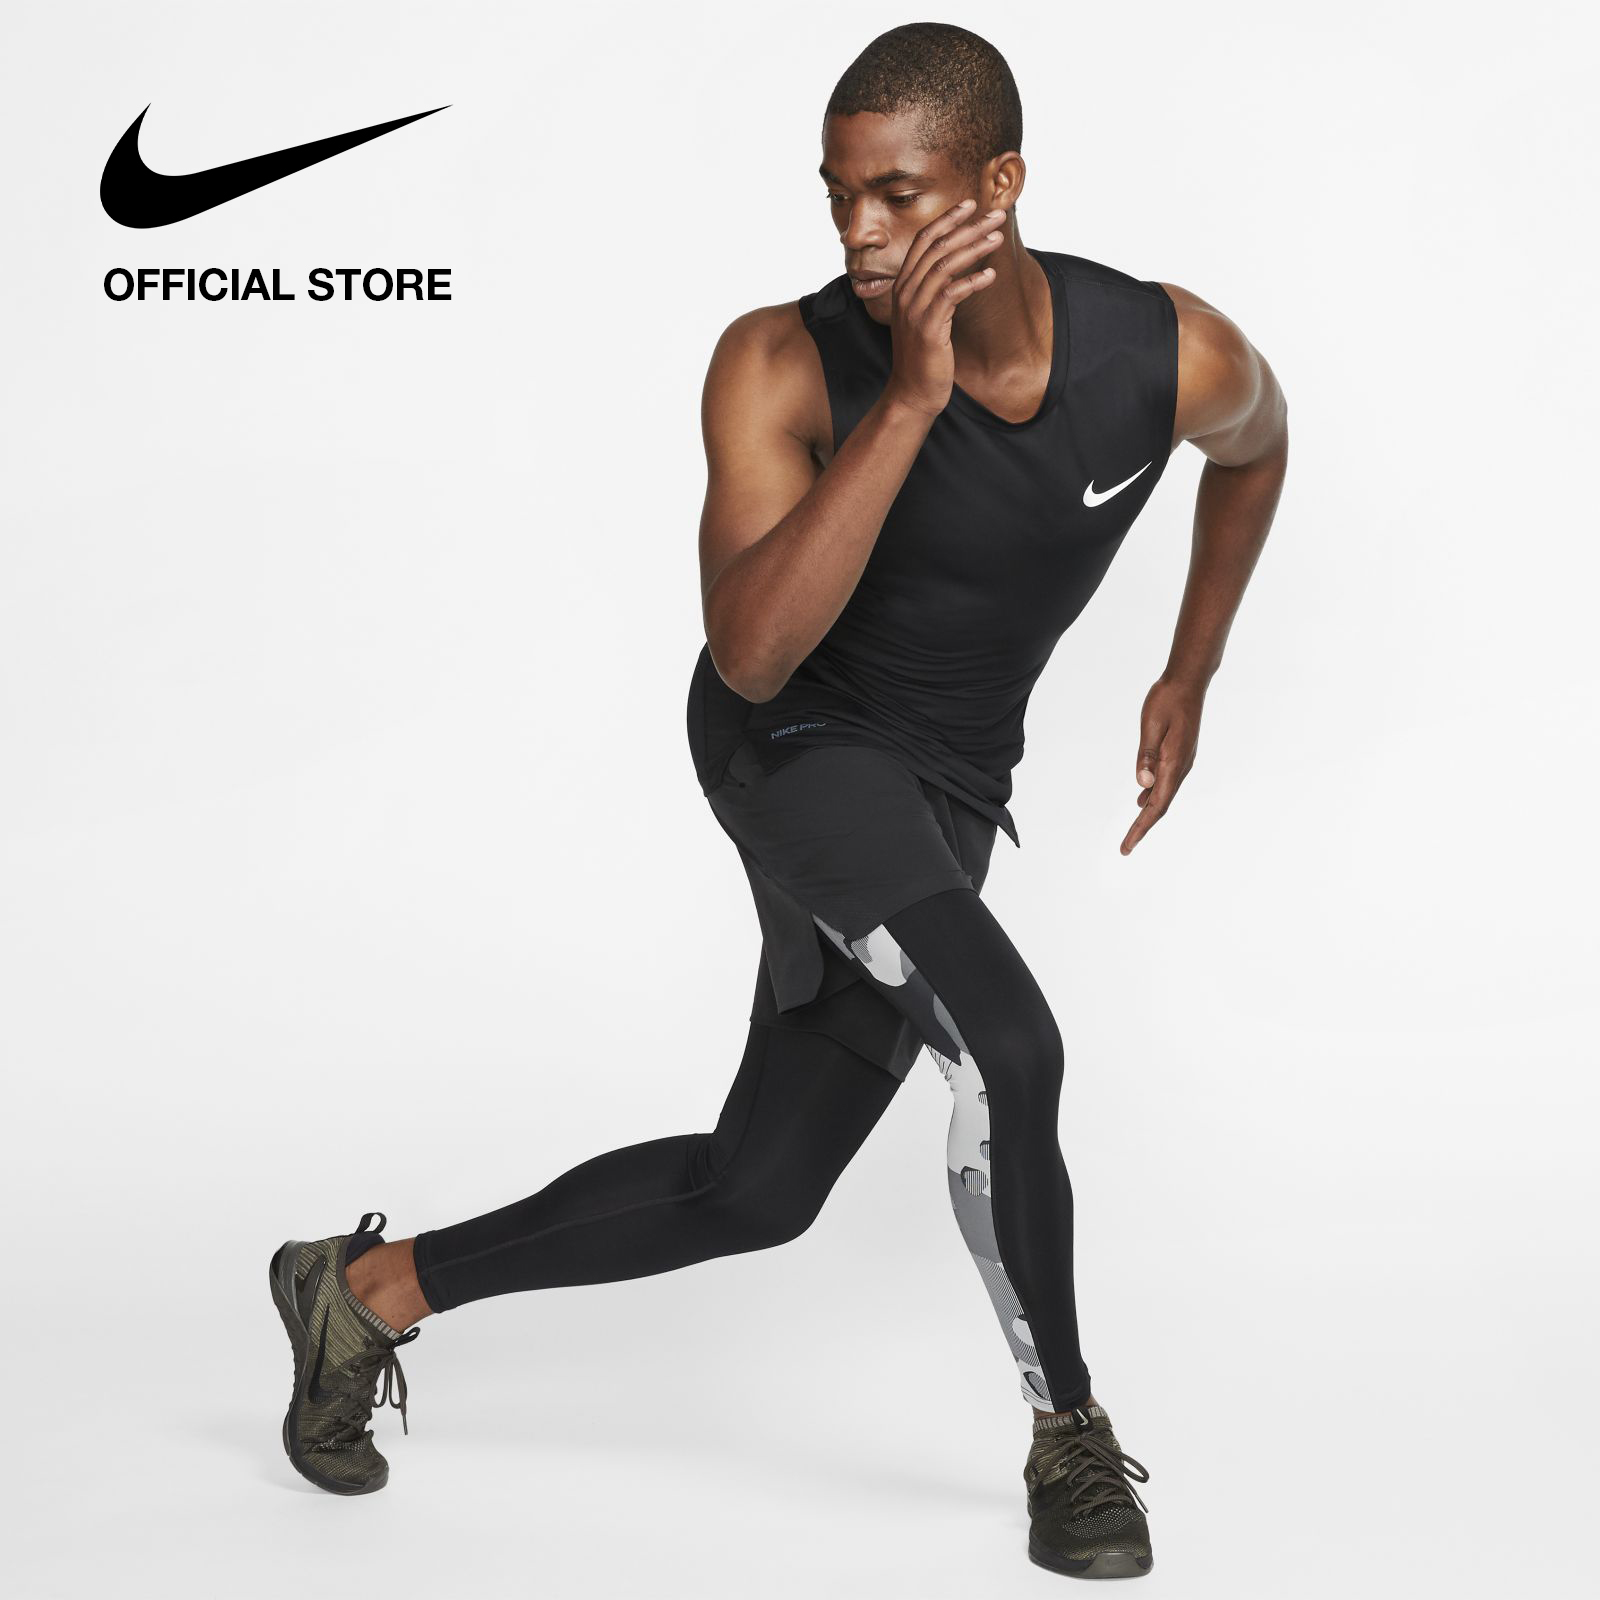 Nike Men's Pro Training Tank - Black ไนกี้ เสื้อกล้ามเทรนนิ่งผู้ชาย โปร - สีดำ